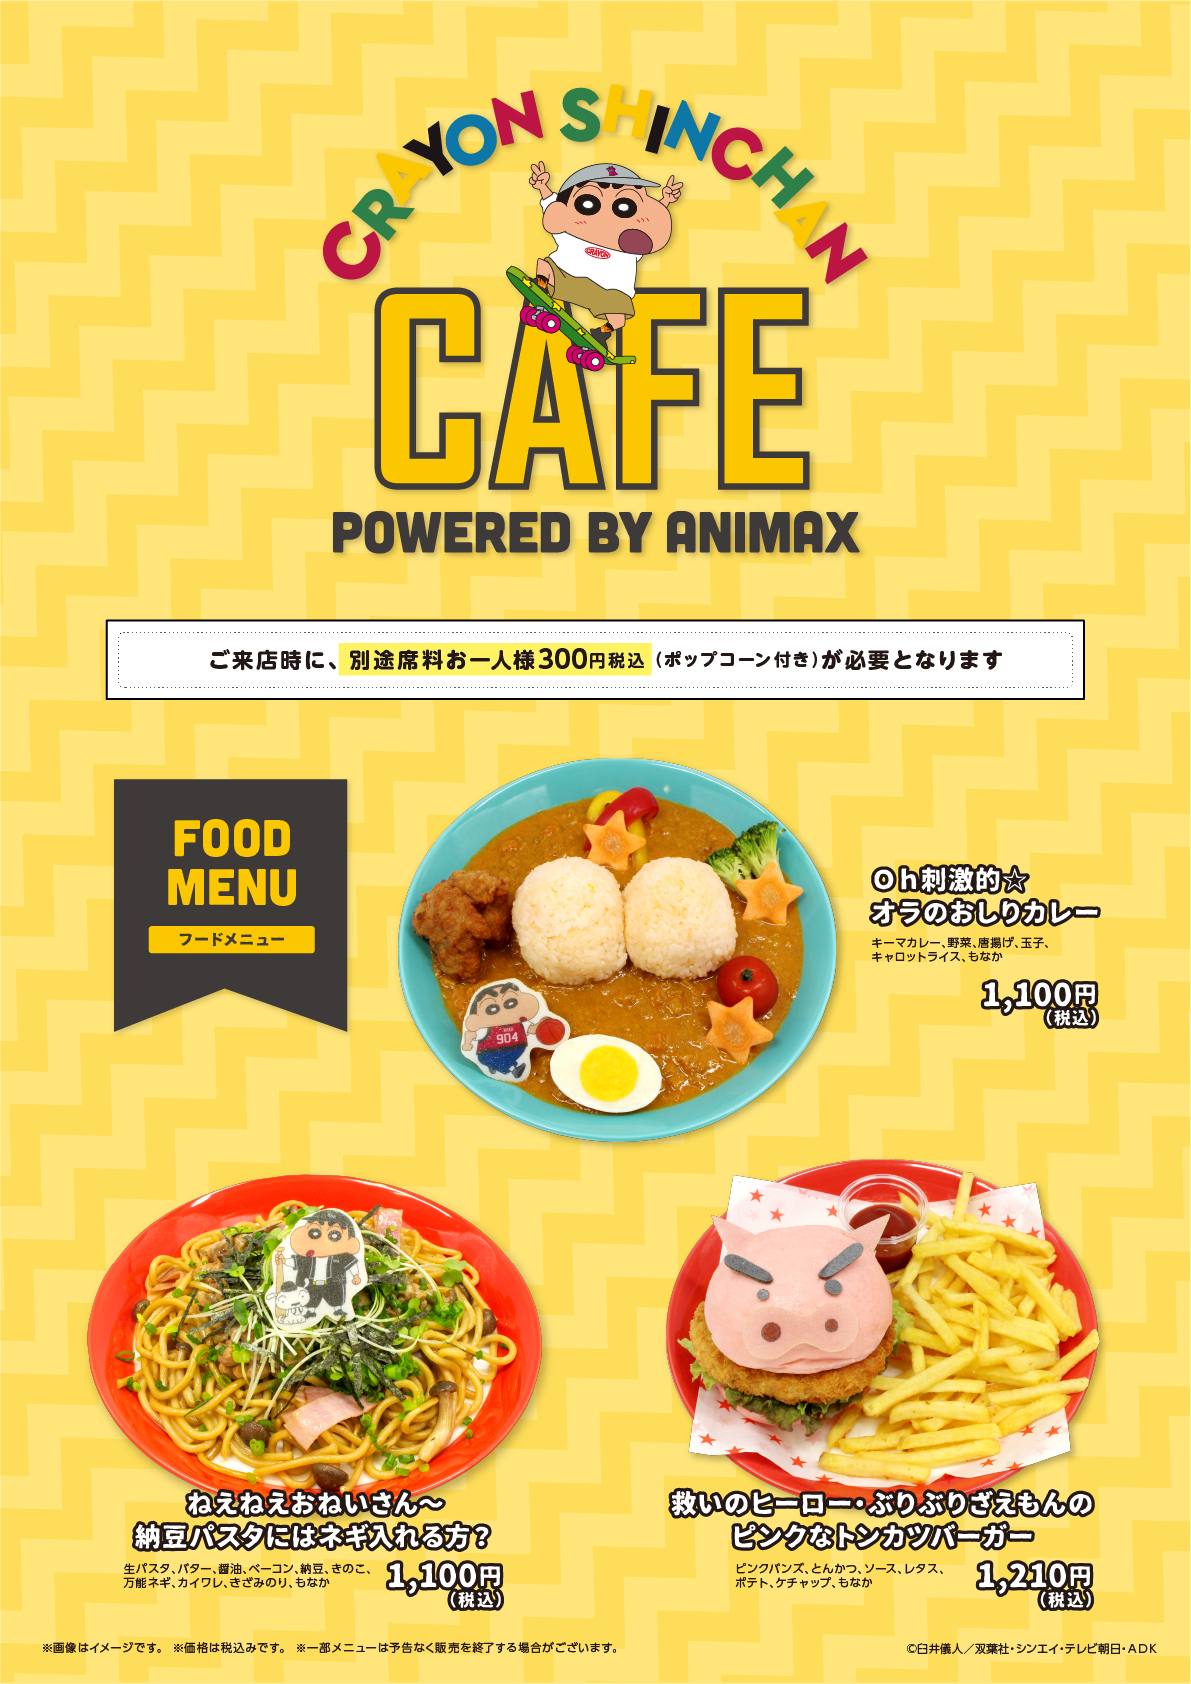 クレヨンしんちゃん cafe 開催 9 17 10 15 animax cafe 東京 スイーツパラダイス 愛知 大阪 コラボカフェ トーキョー